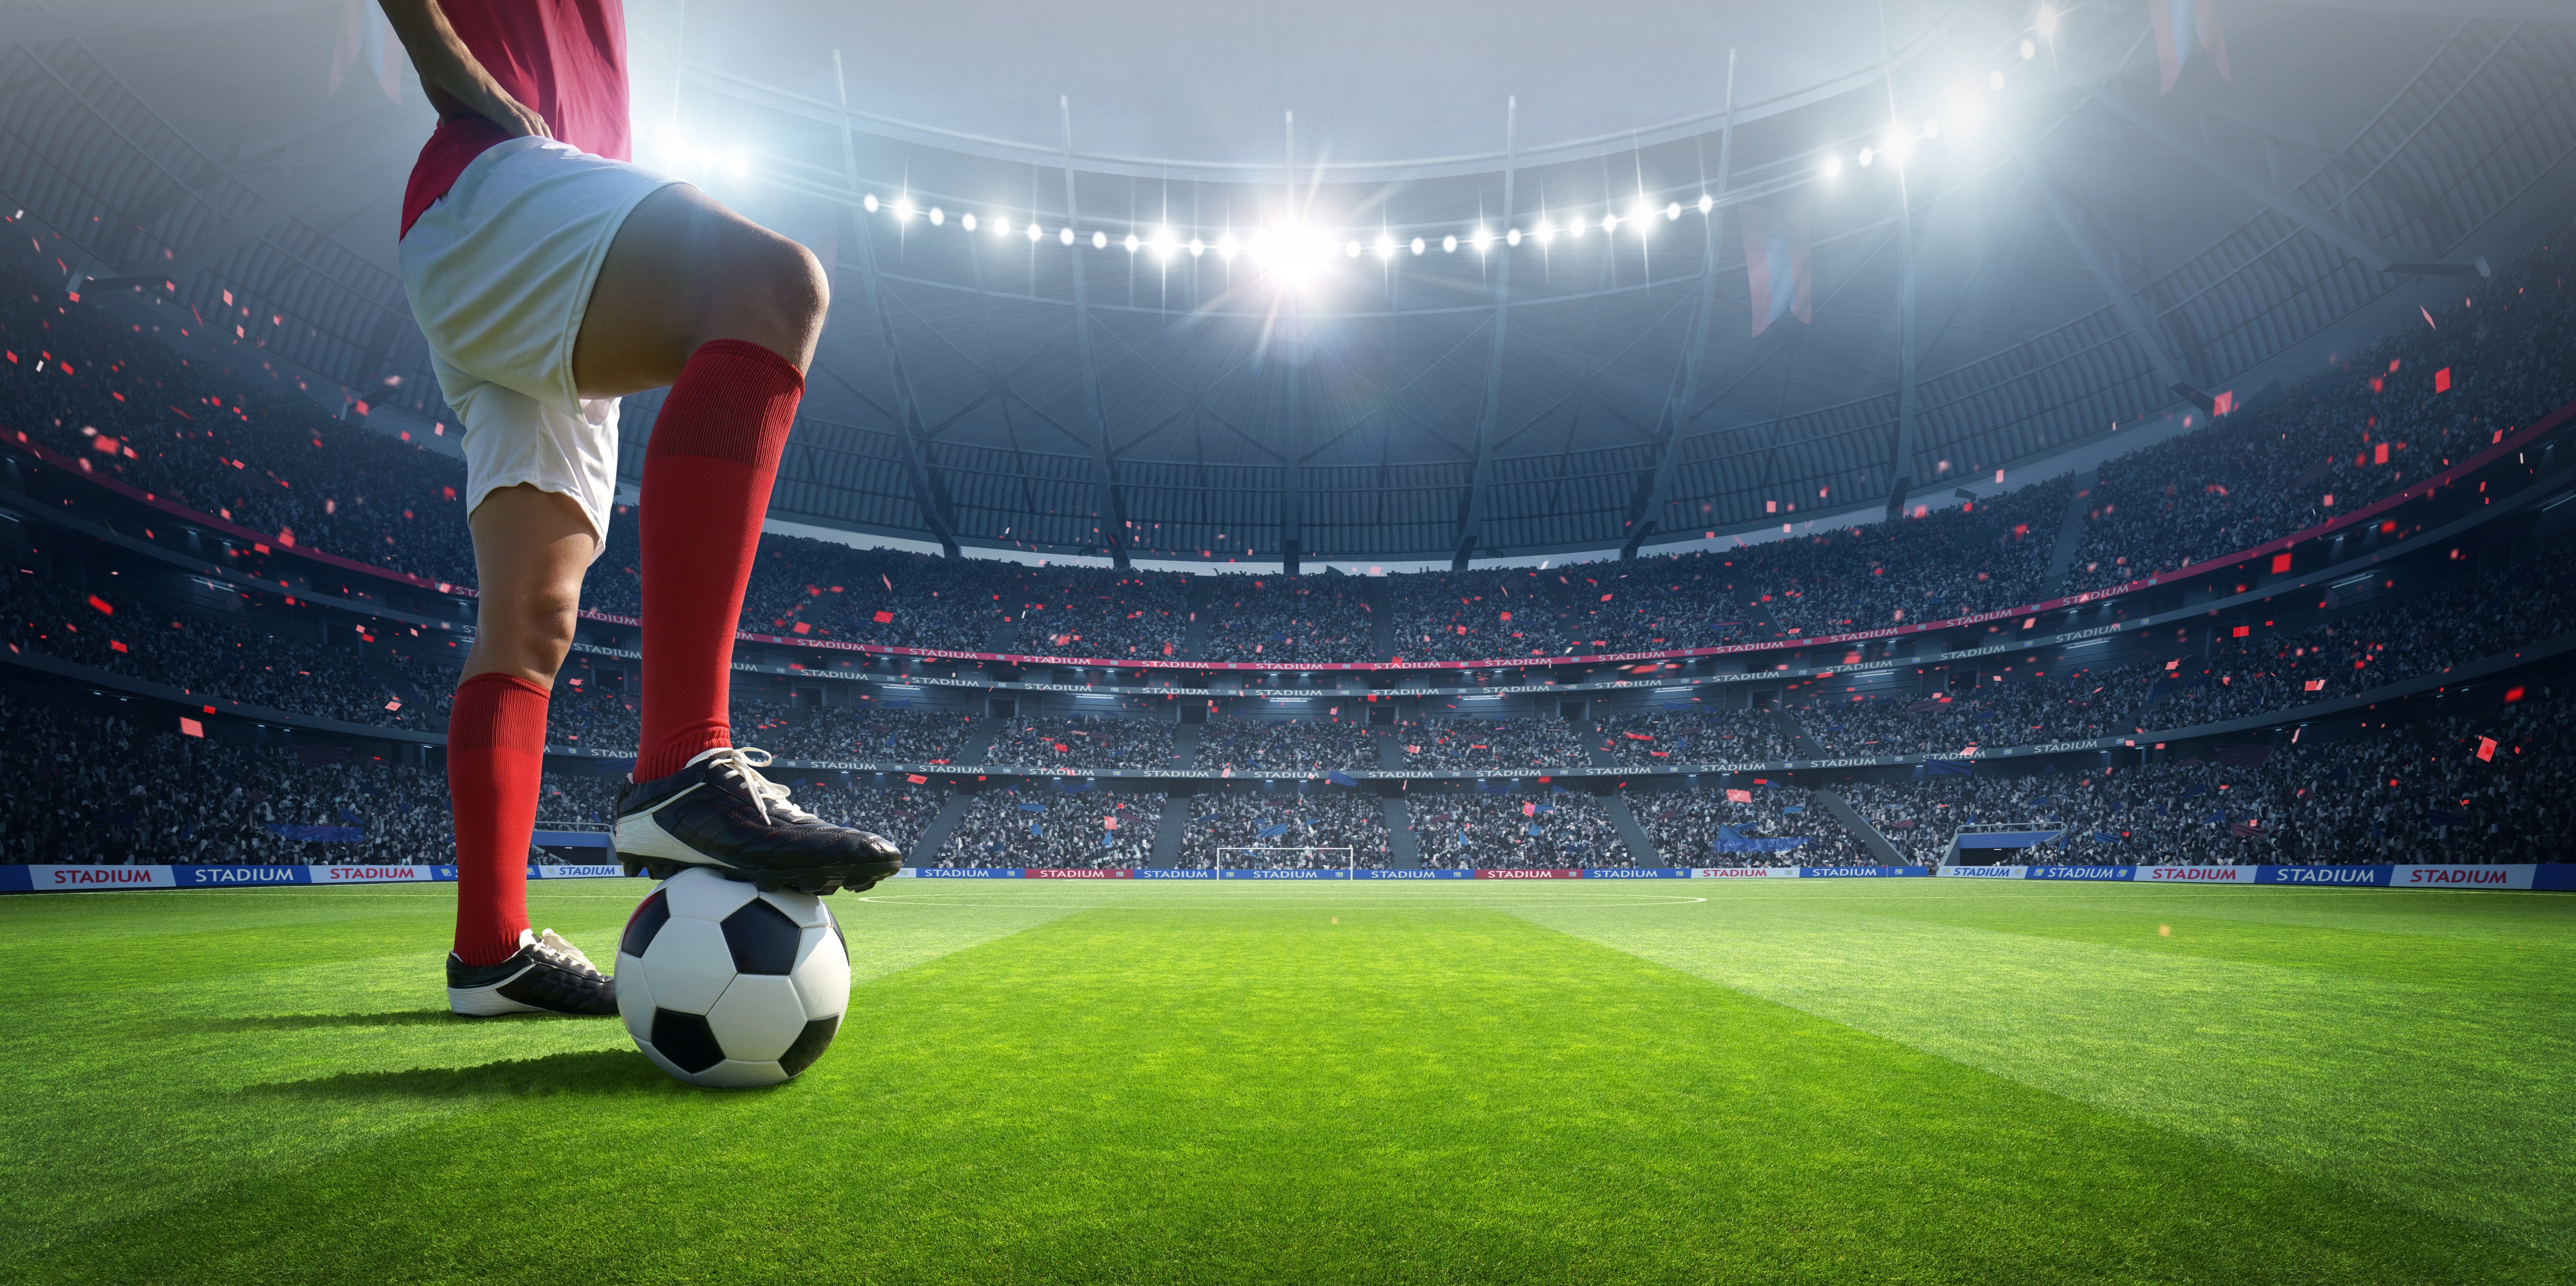 Un joueur de football dans le stade | Source : Shutterstock